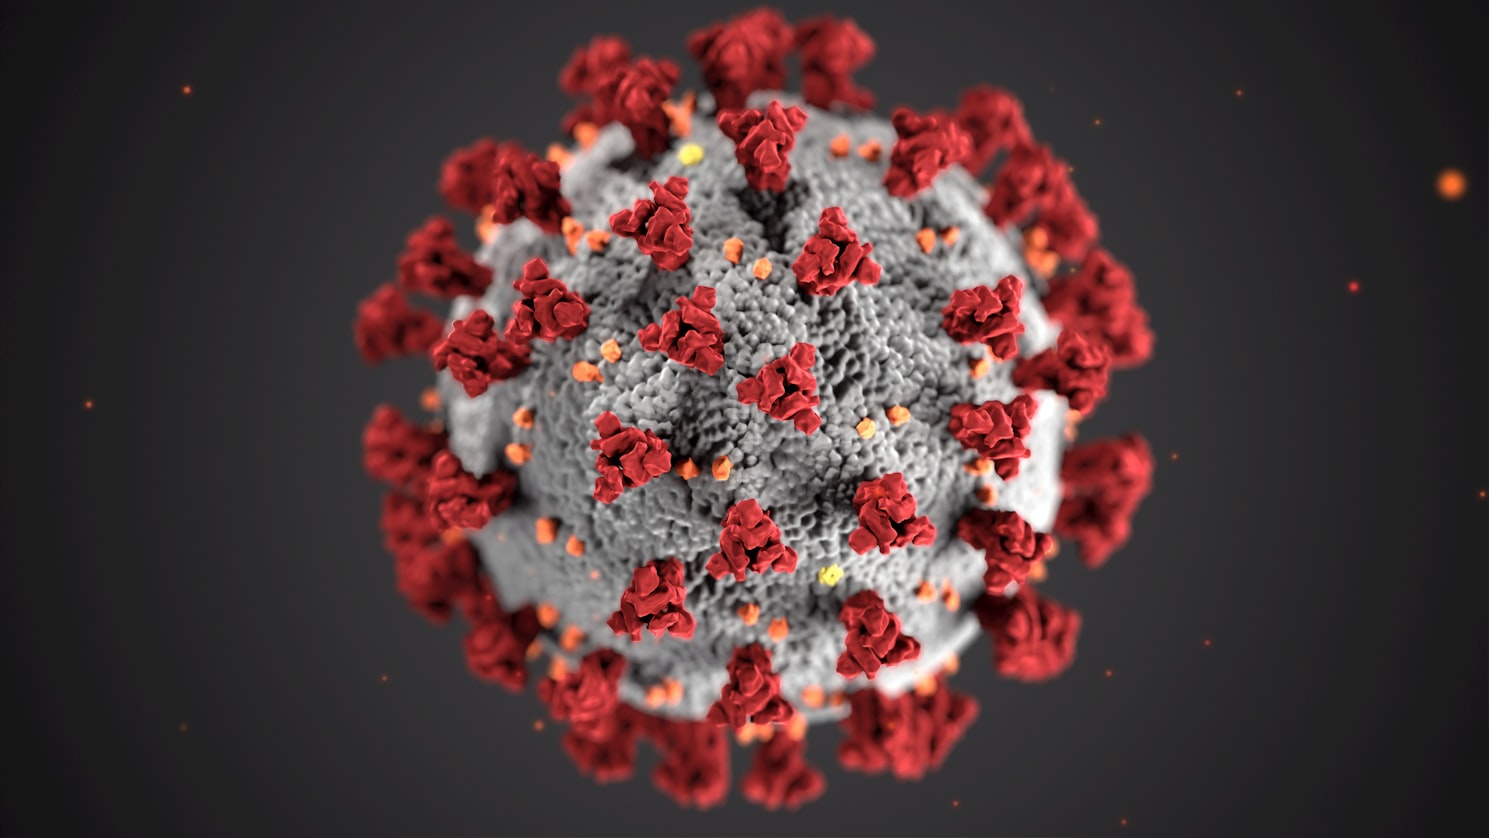 Illustration of the Coronavirus under a microscope